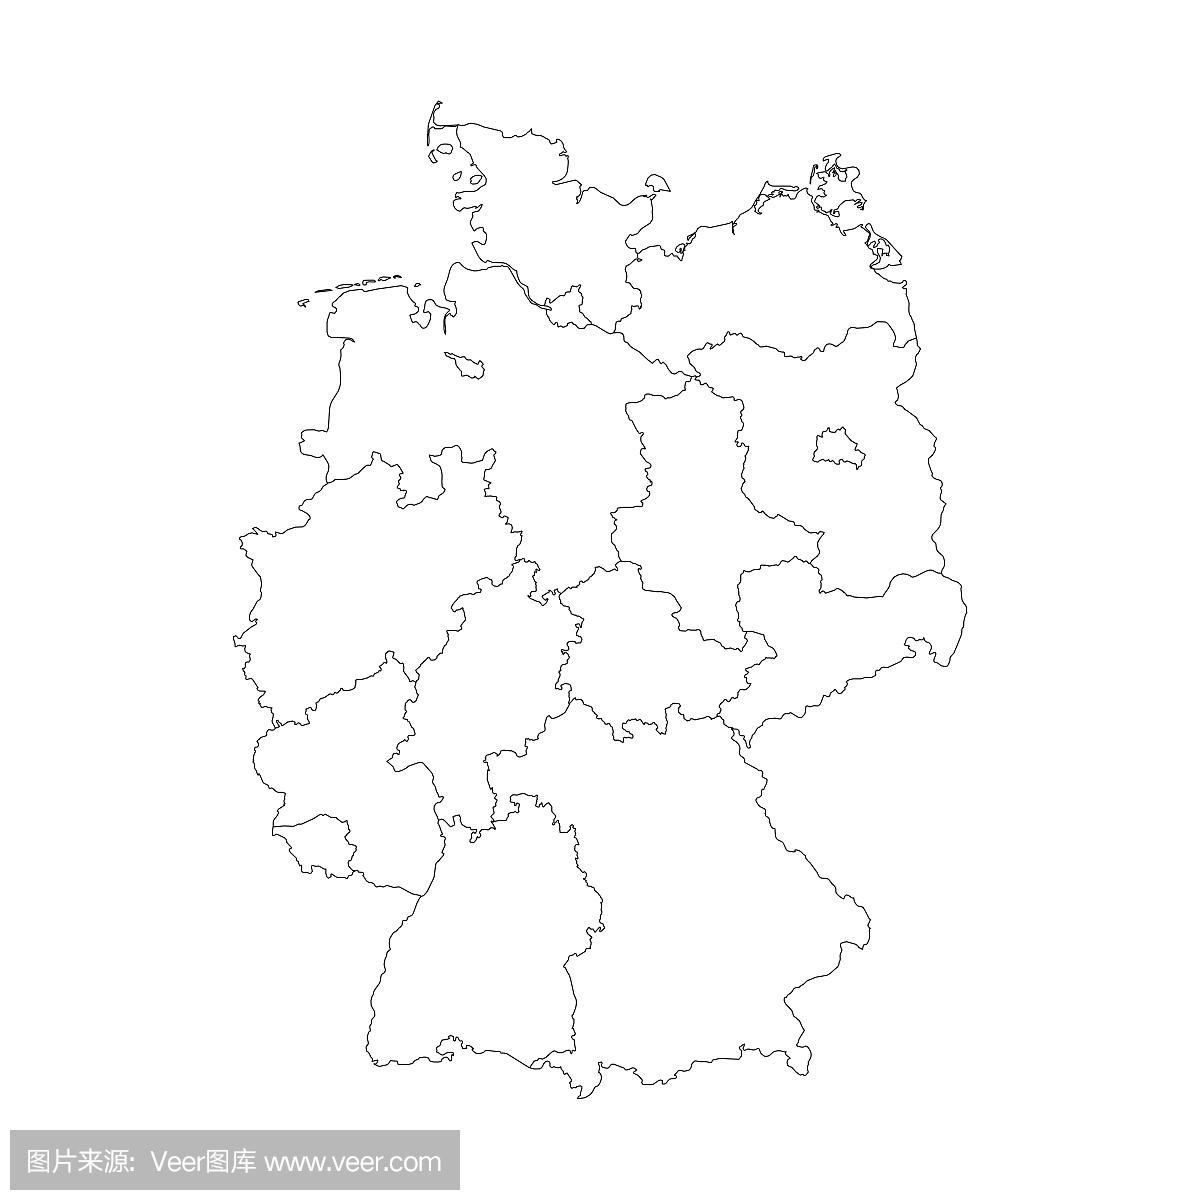 德国地图分为联邦州